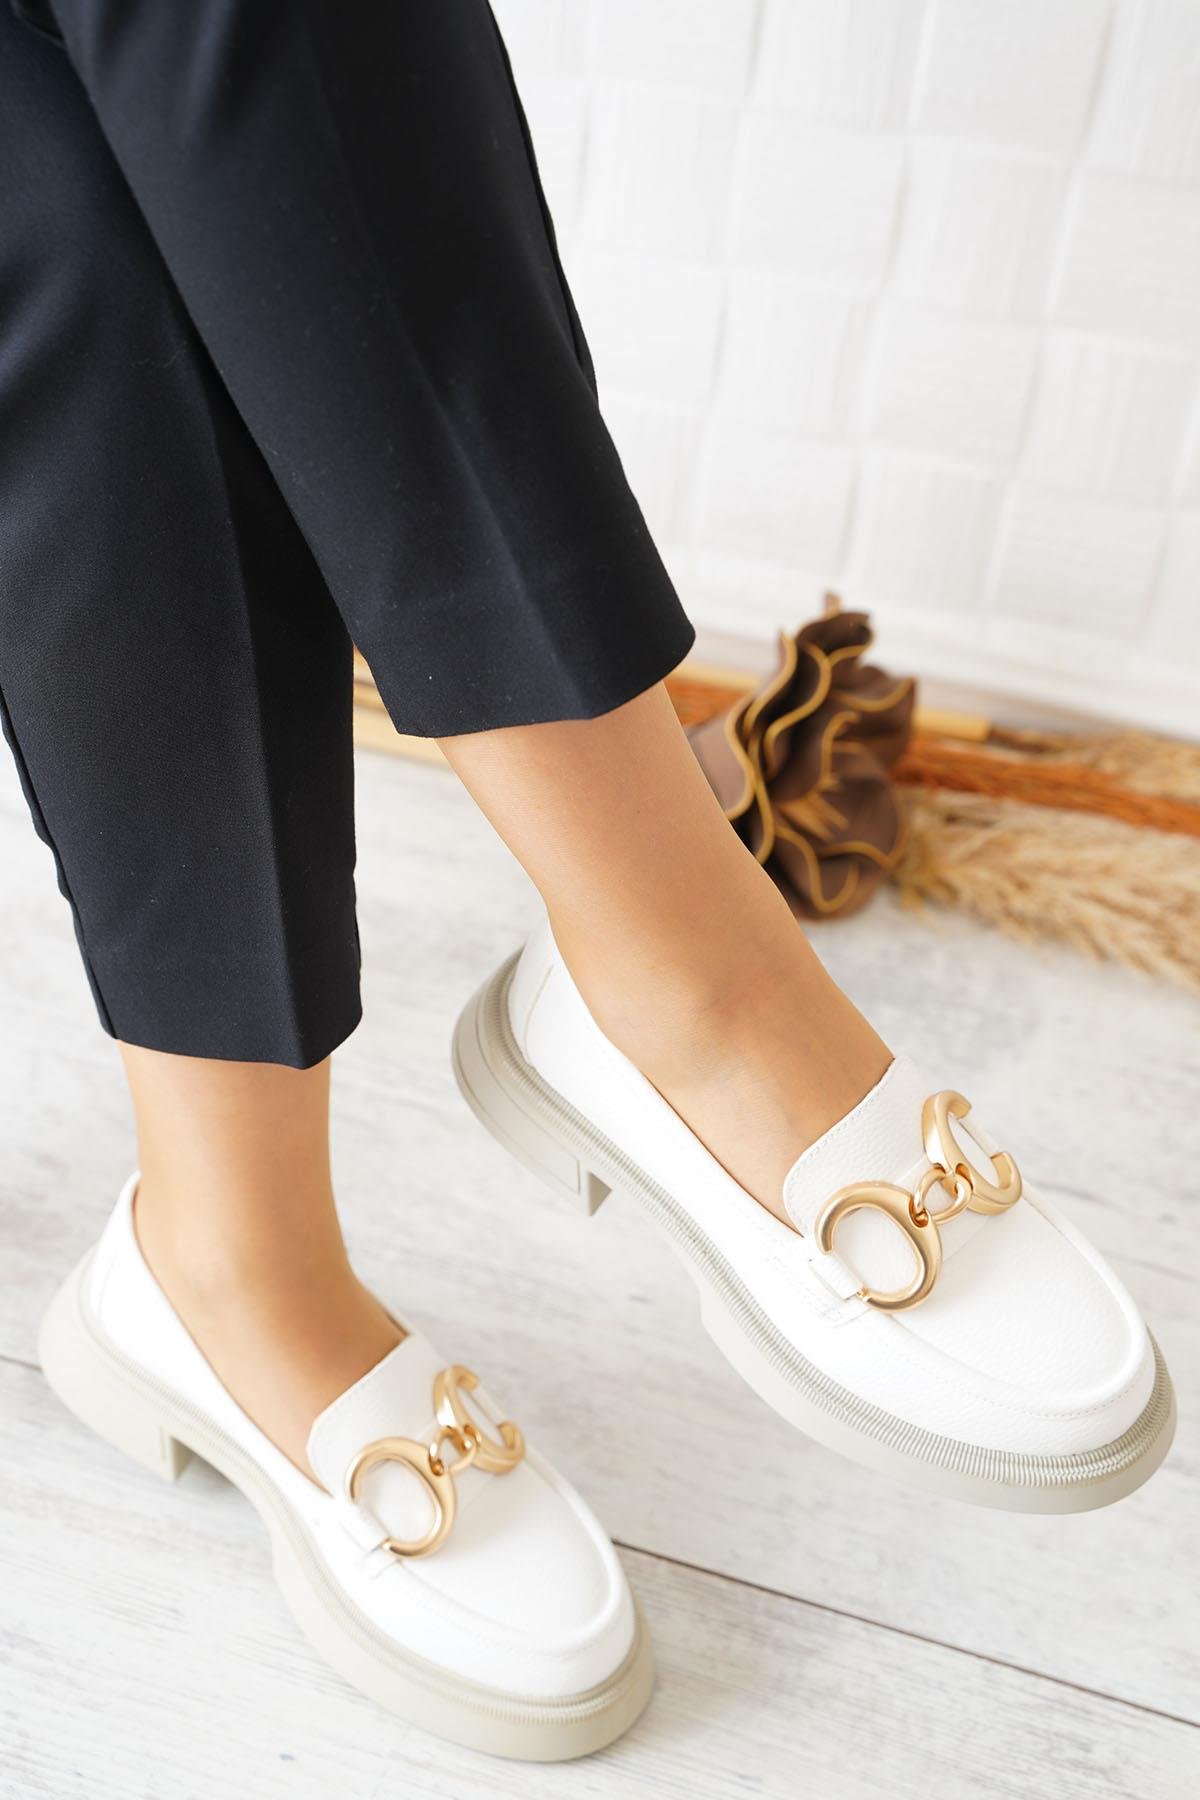 Olce Geçme Tokalı Kadın Loafer Ayakkabı Beyaz Cilt